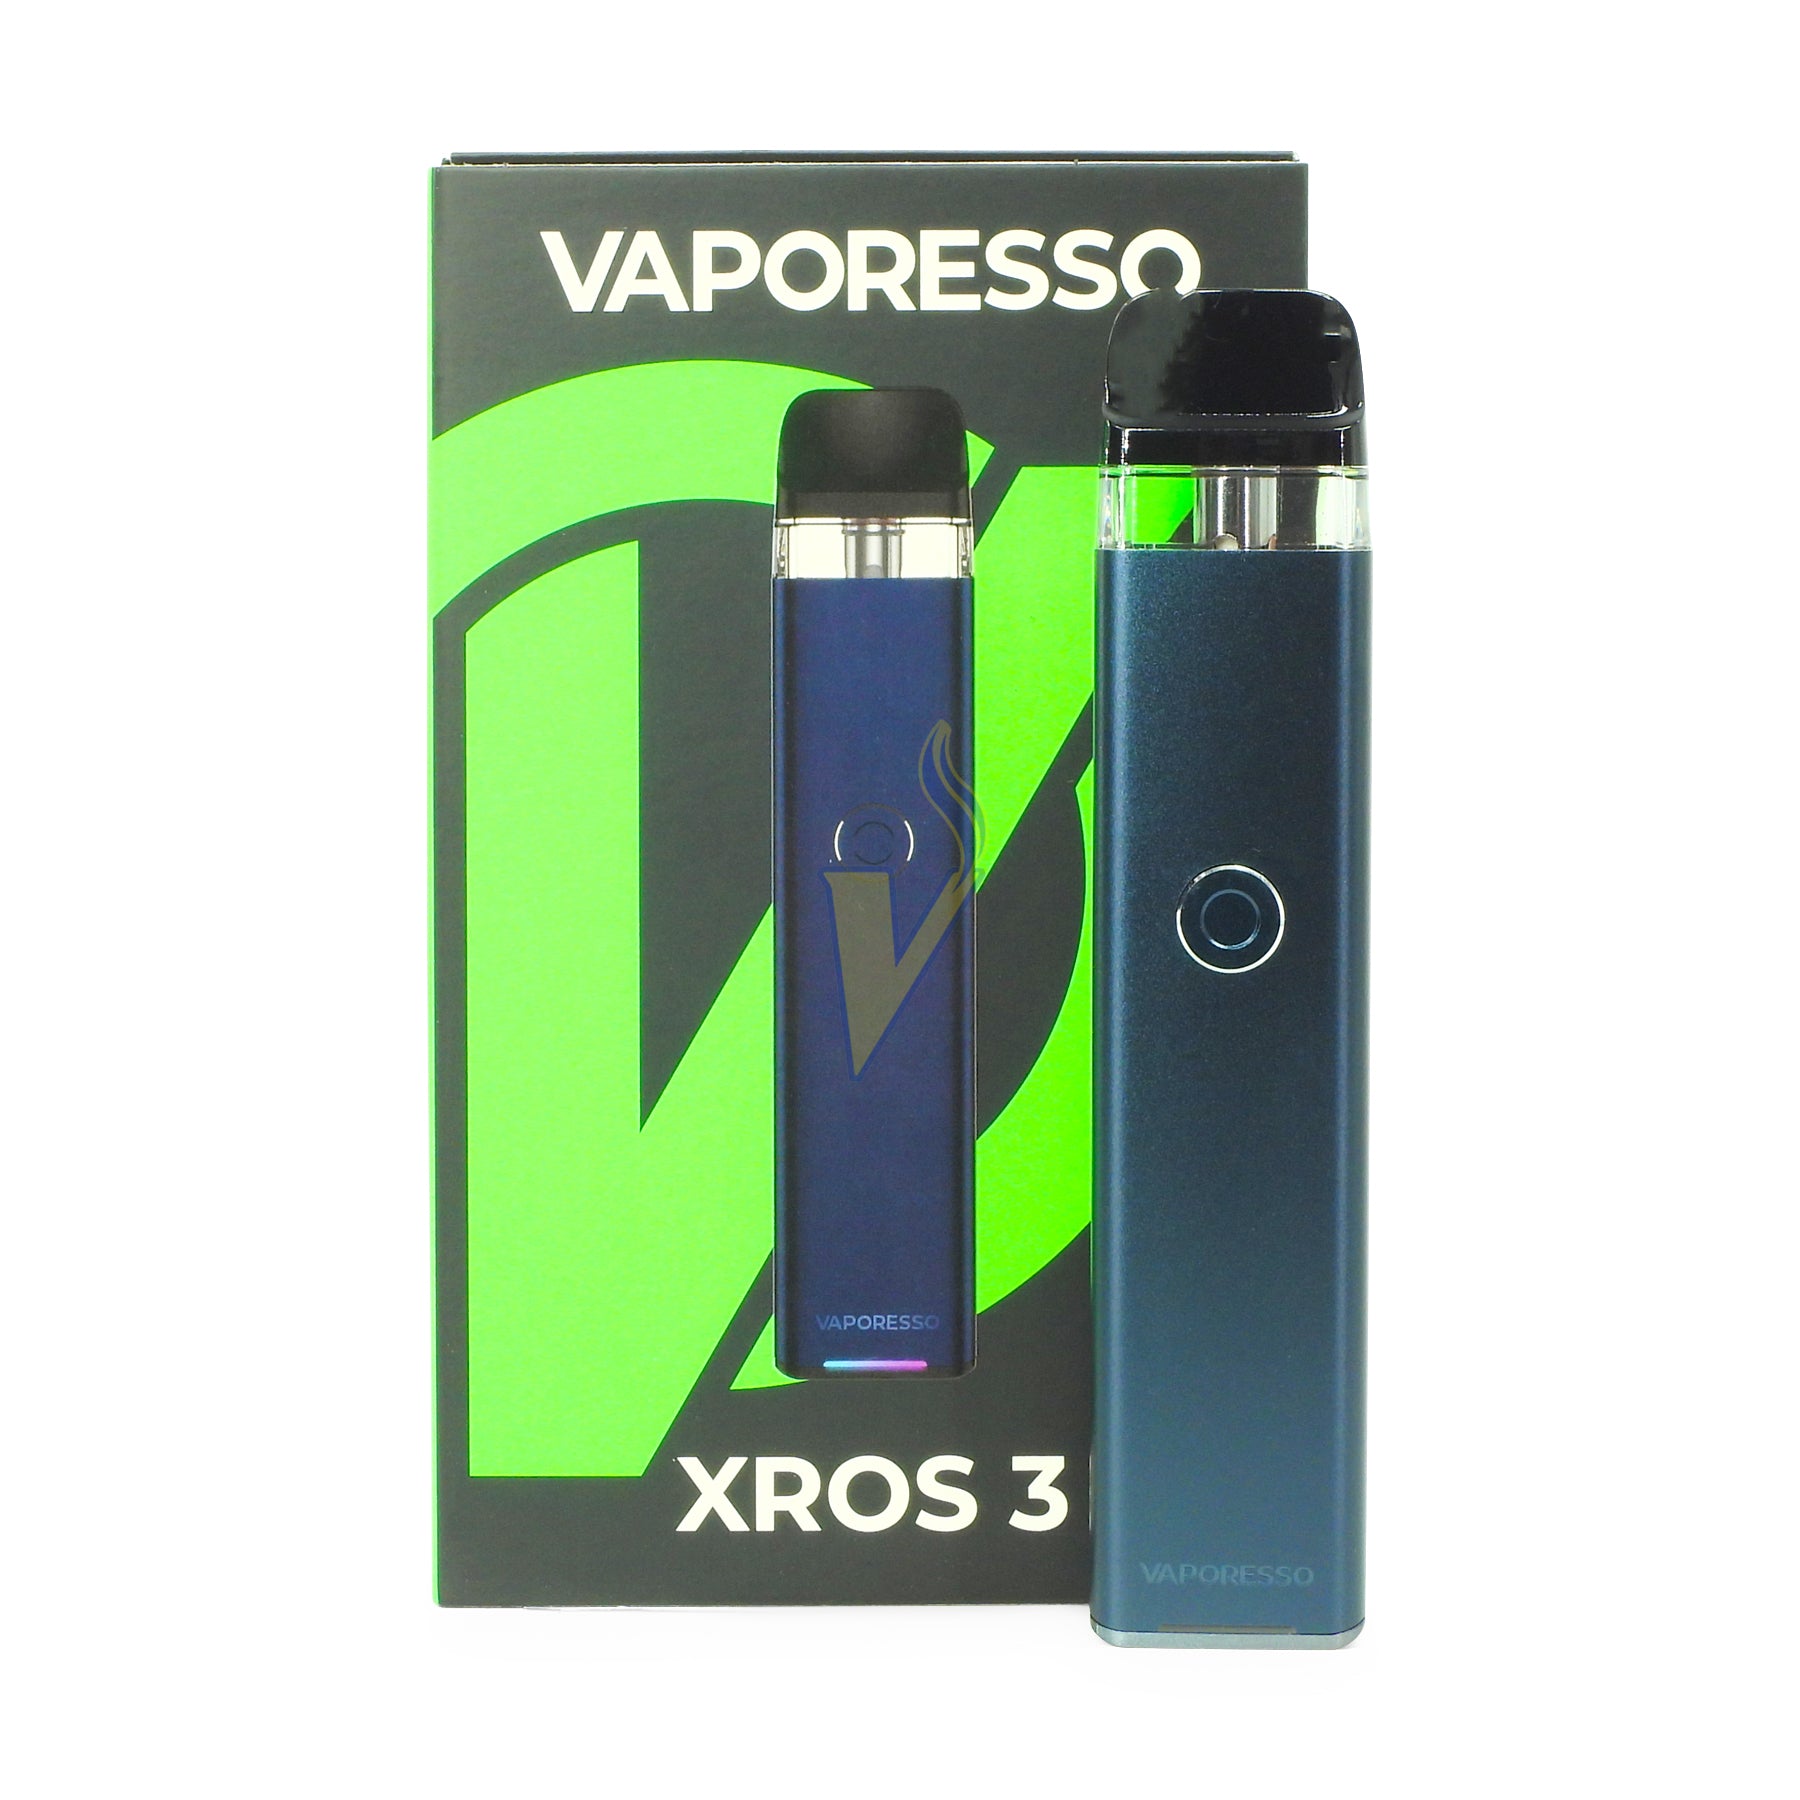 Vaporesso XROS 3 Nano Kit $24.99